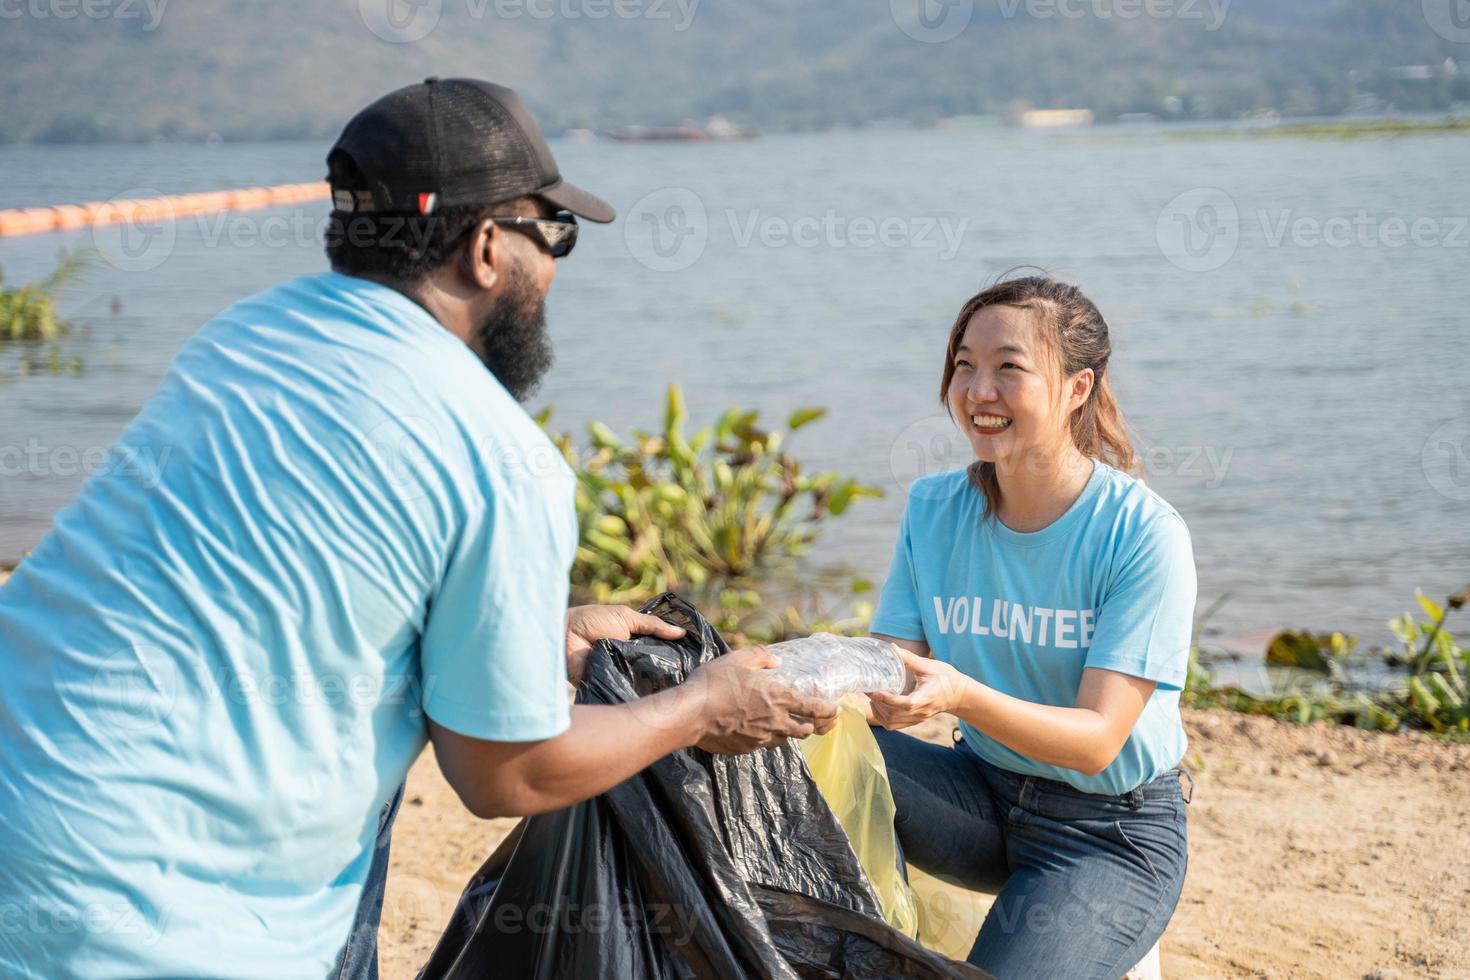 contento grupo de joven voluntarios limpieza el plastico a río playa. ambiental y ecológico cuidado, tierra día concepto foto